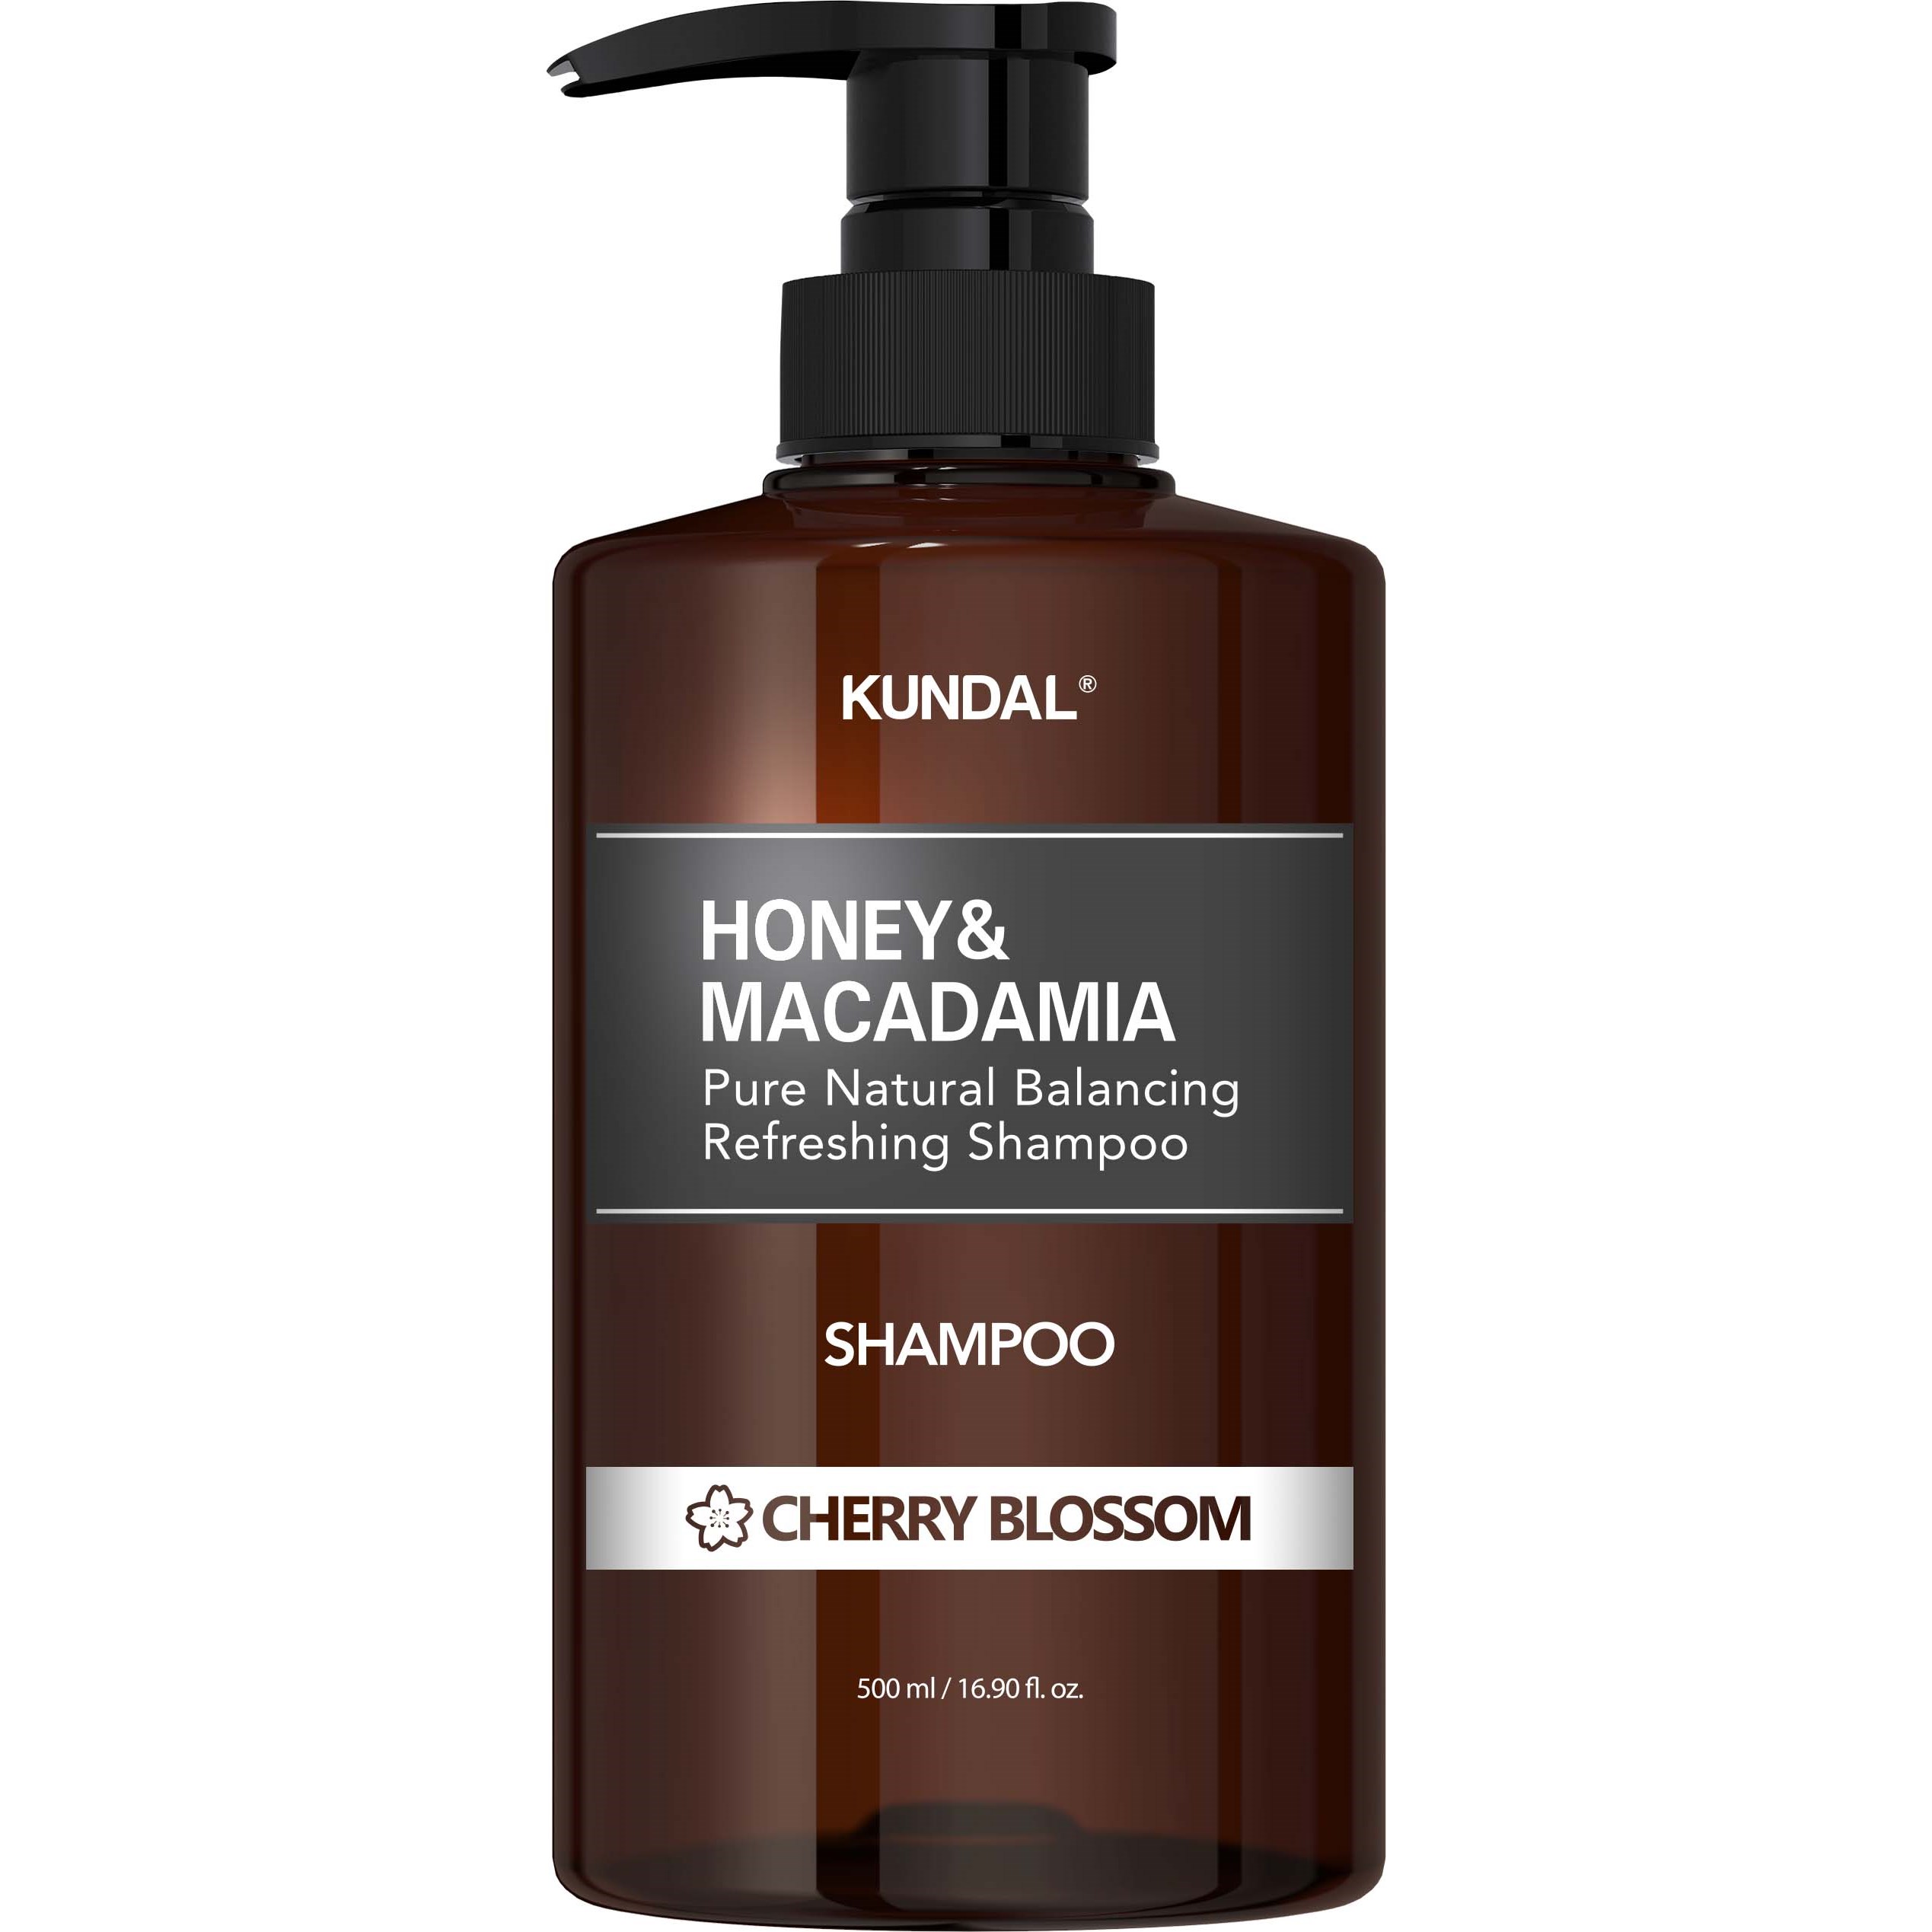 Kundal Honey & Macadamia Shampoo Cherry Blossom 500 ml